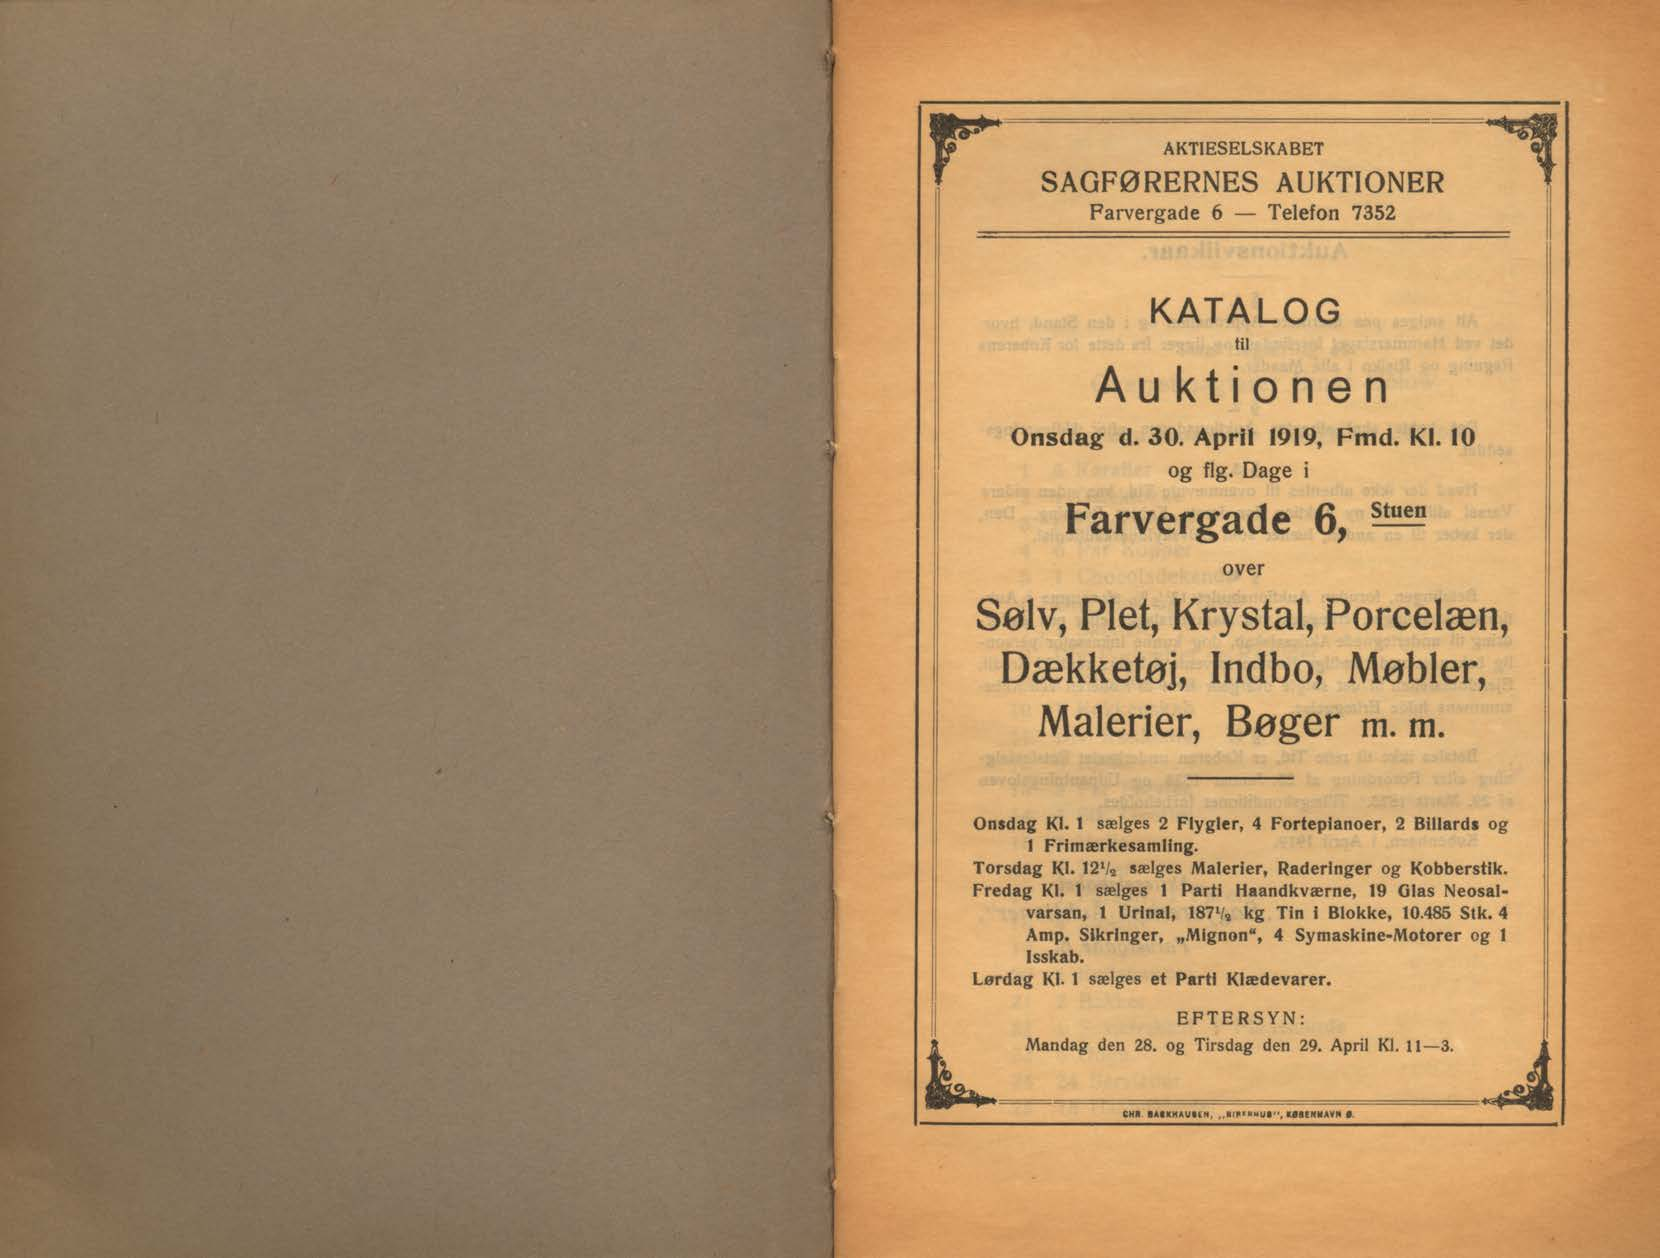 AKTIESELSKABET SAGFØRERNES AUKTIONER Farvergade 6 Telefon 7352 KATALOG til Auktionen Onsdag d. 30. April 1919, Fmd. Kl. 10 og flg.